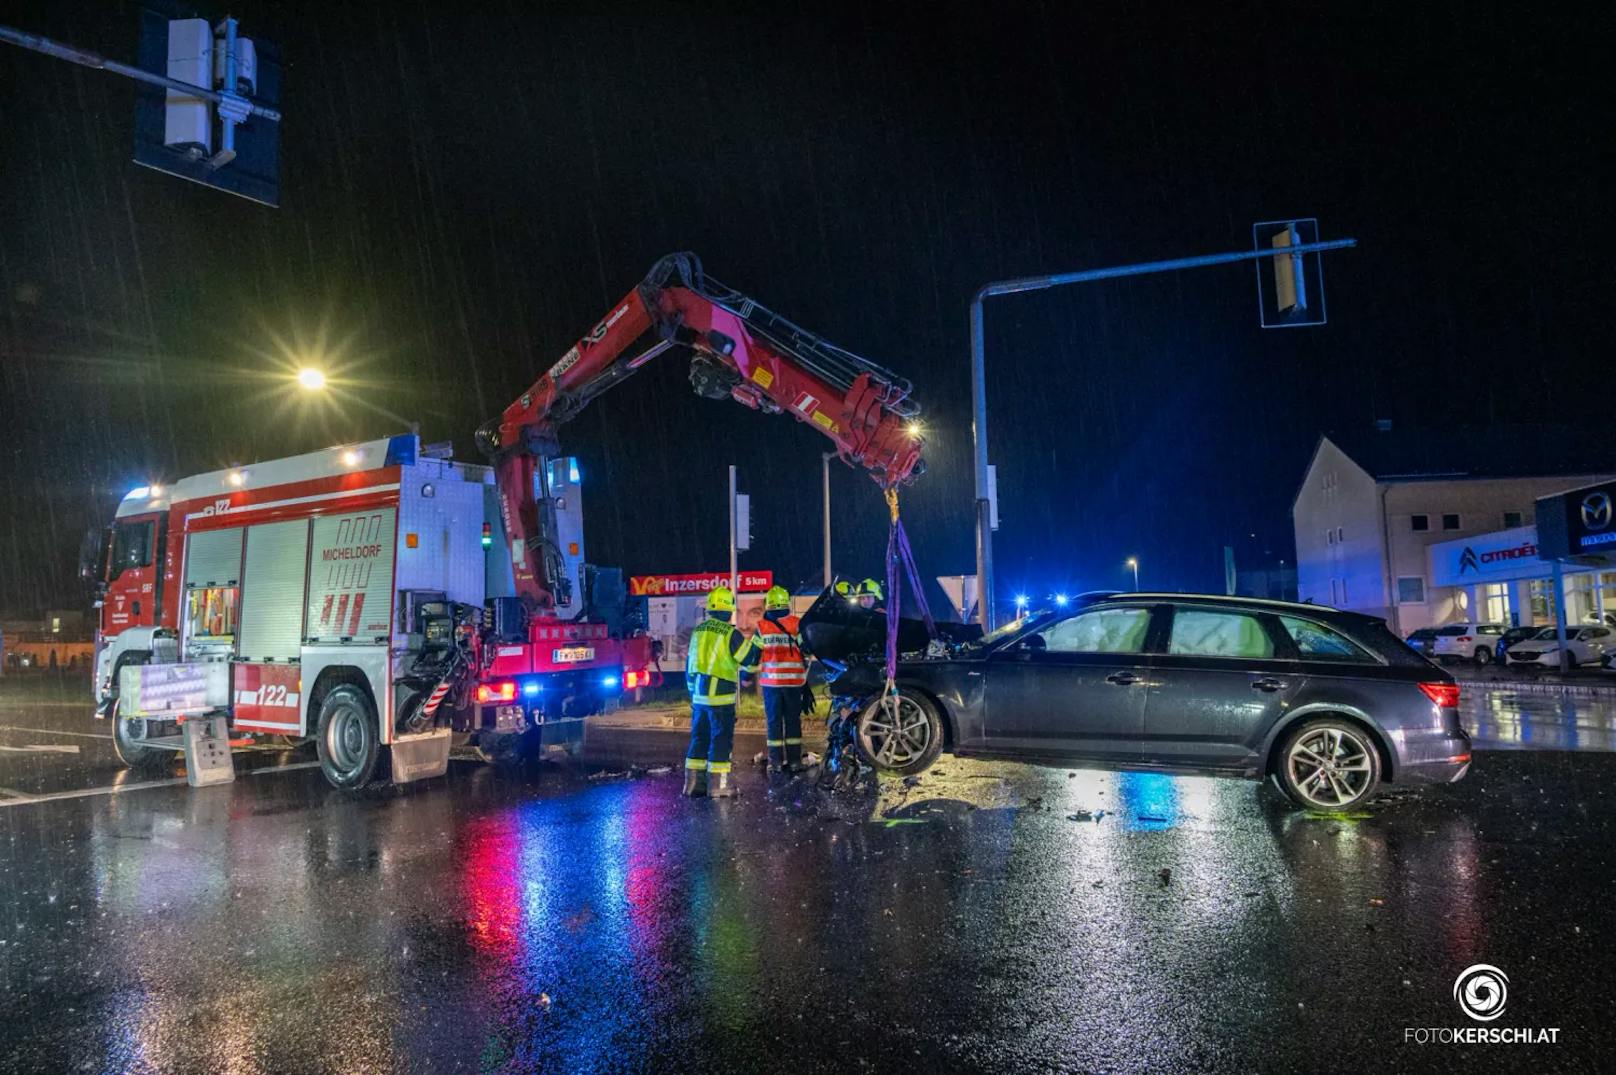 Die Feuerwehr Micheldorf wurde am späten Montagabend zu Aufräumarbeiten nach einem Verkehrsunfall zur "Mazda Wagner Kreuzung" alarmiert. Zwei Autos waren an einer Kreuzung zusammengestoßen.